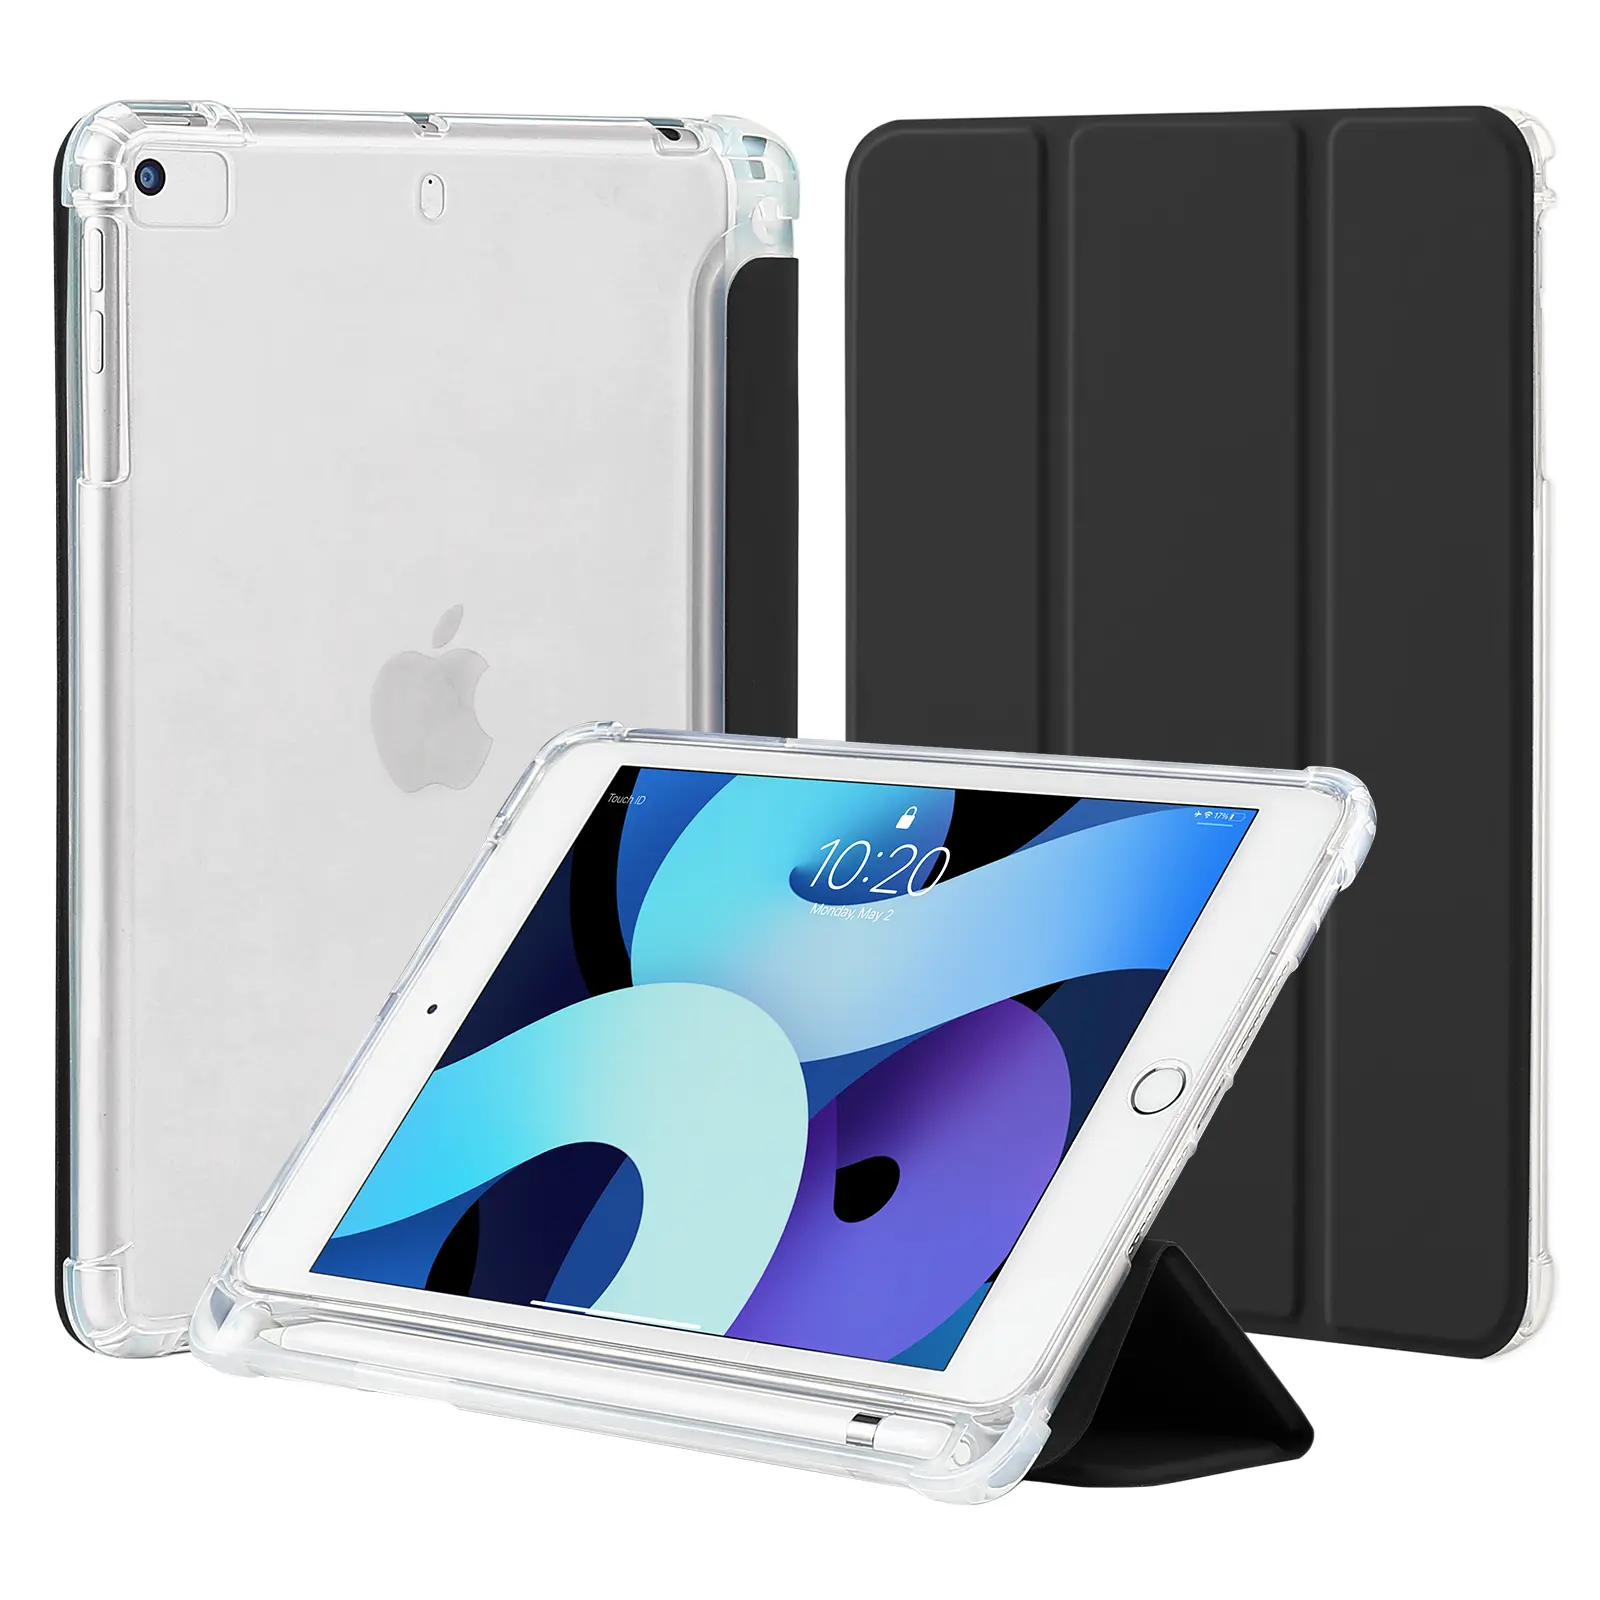 Funda para tableta Transparente Claro Suave Flexible TPU Tri-Fold folio para Ipad Mini 54321